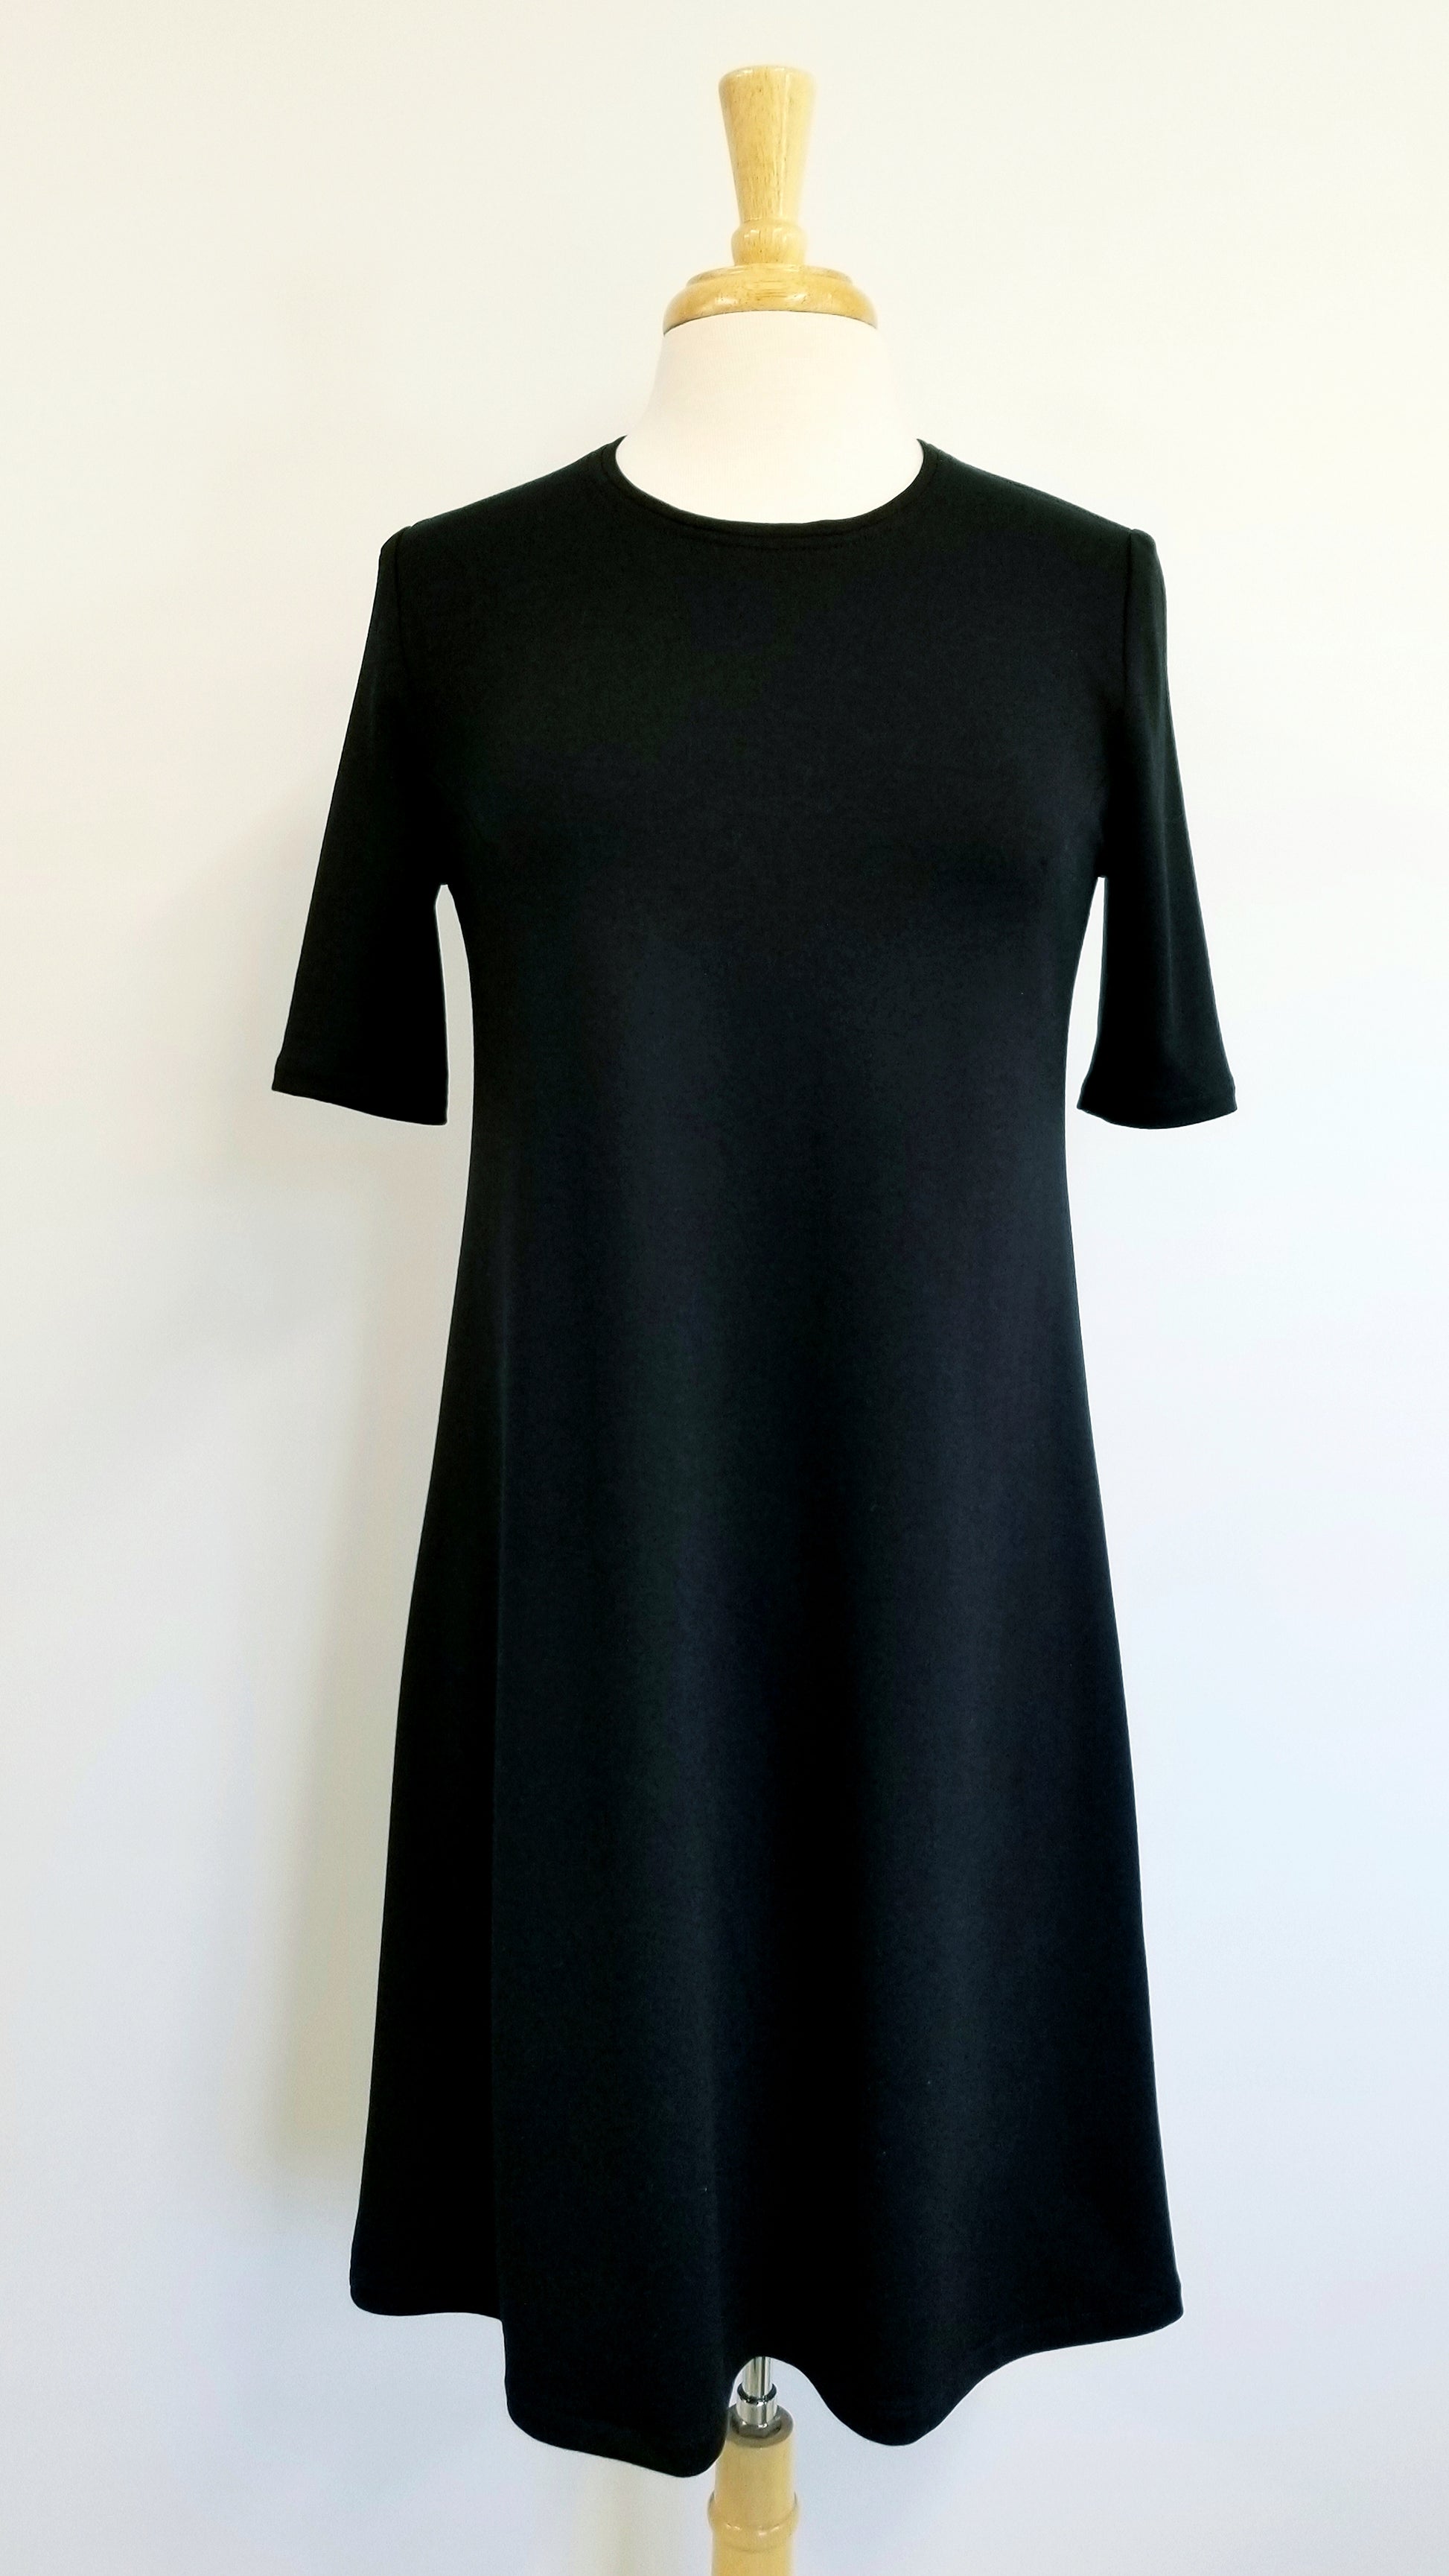 Petite robe noire de designer québécois cm atelier-boutique